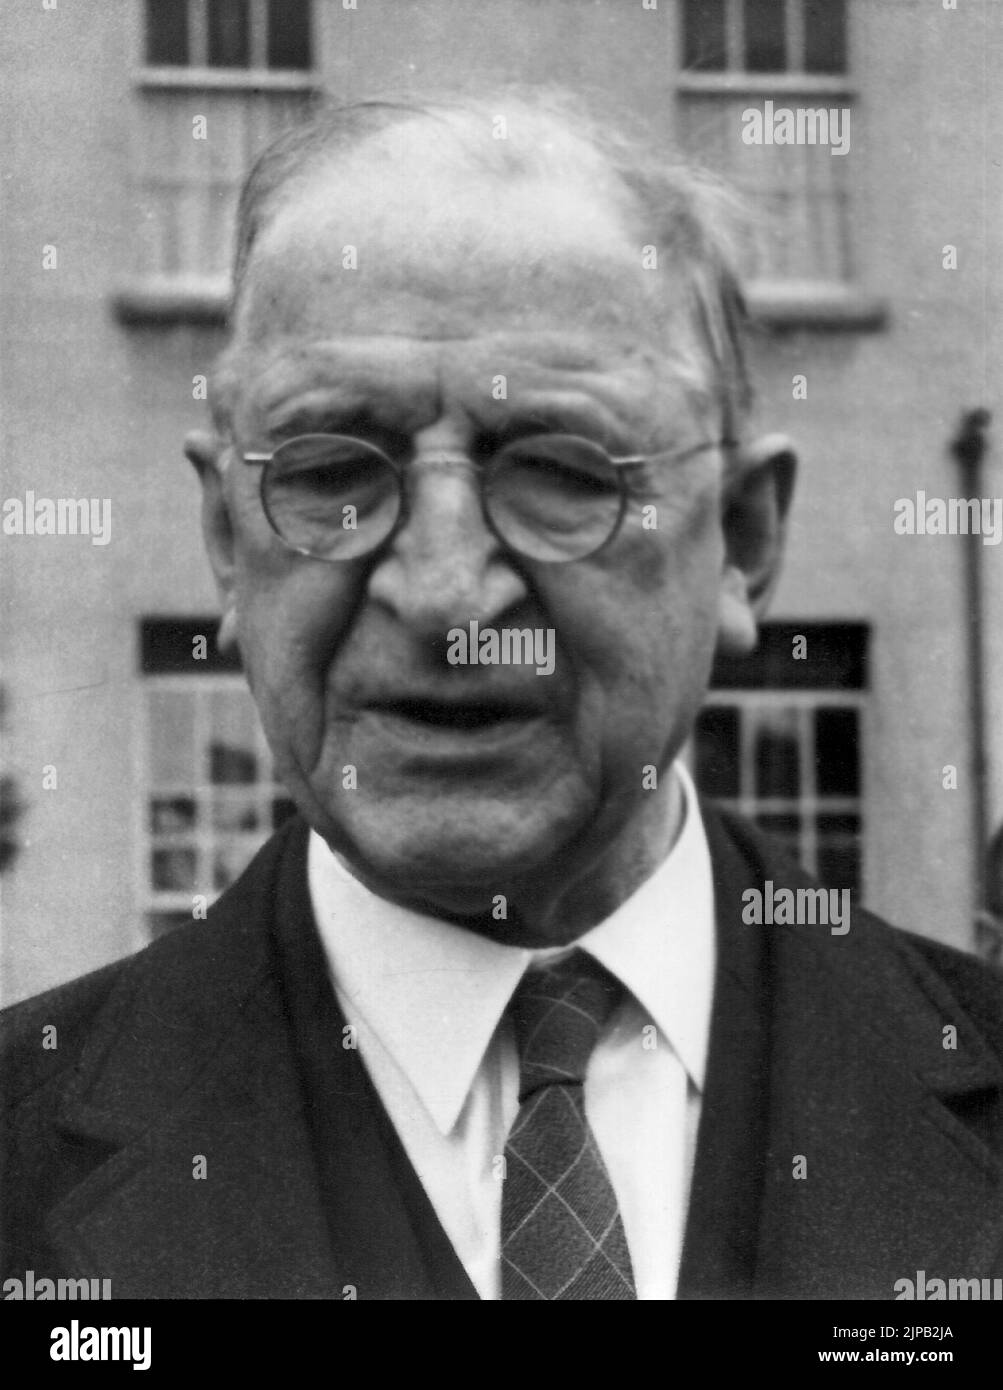 Éamon de Valera, le leader révolutionnaire et politique irlandais, en 1960s, alors président de l'Irlande Banque D'Images